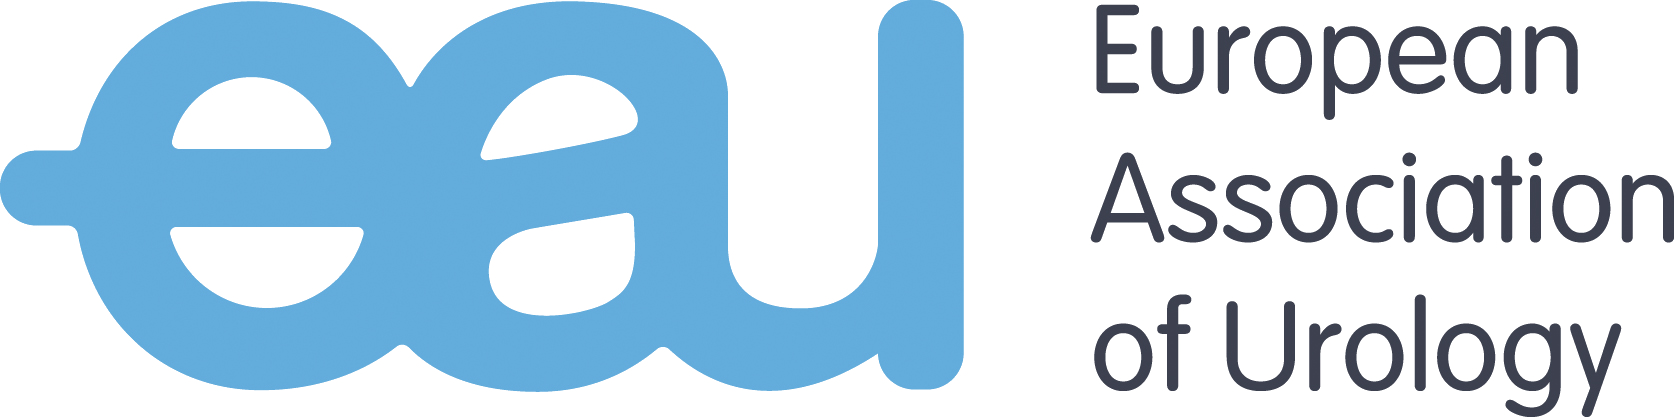 European Association of Urology Logo